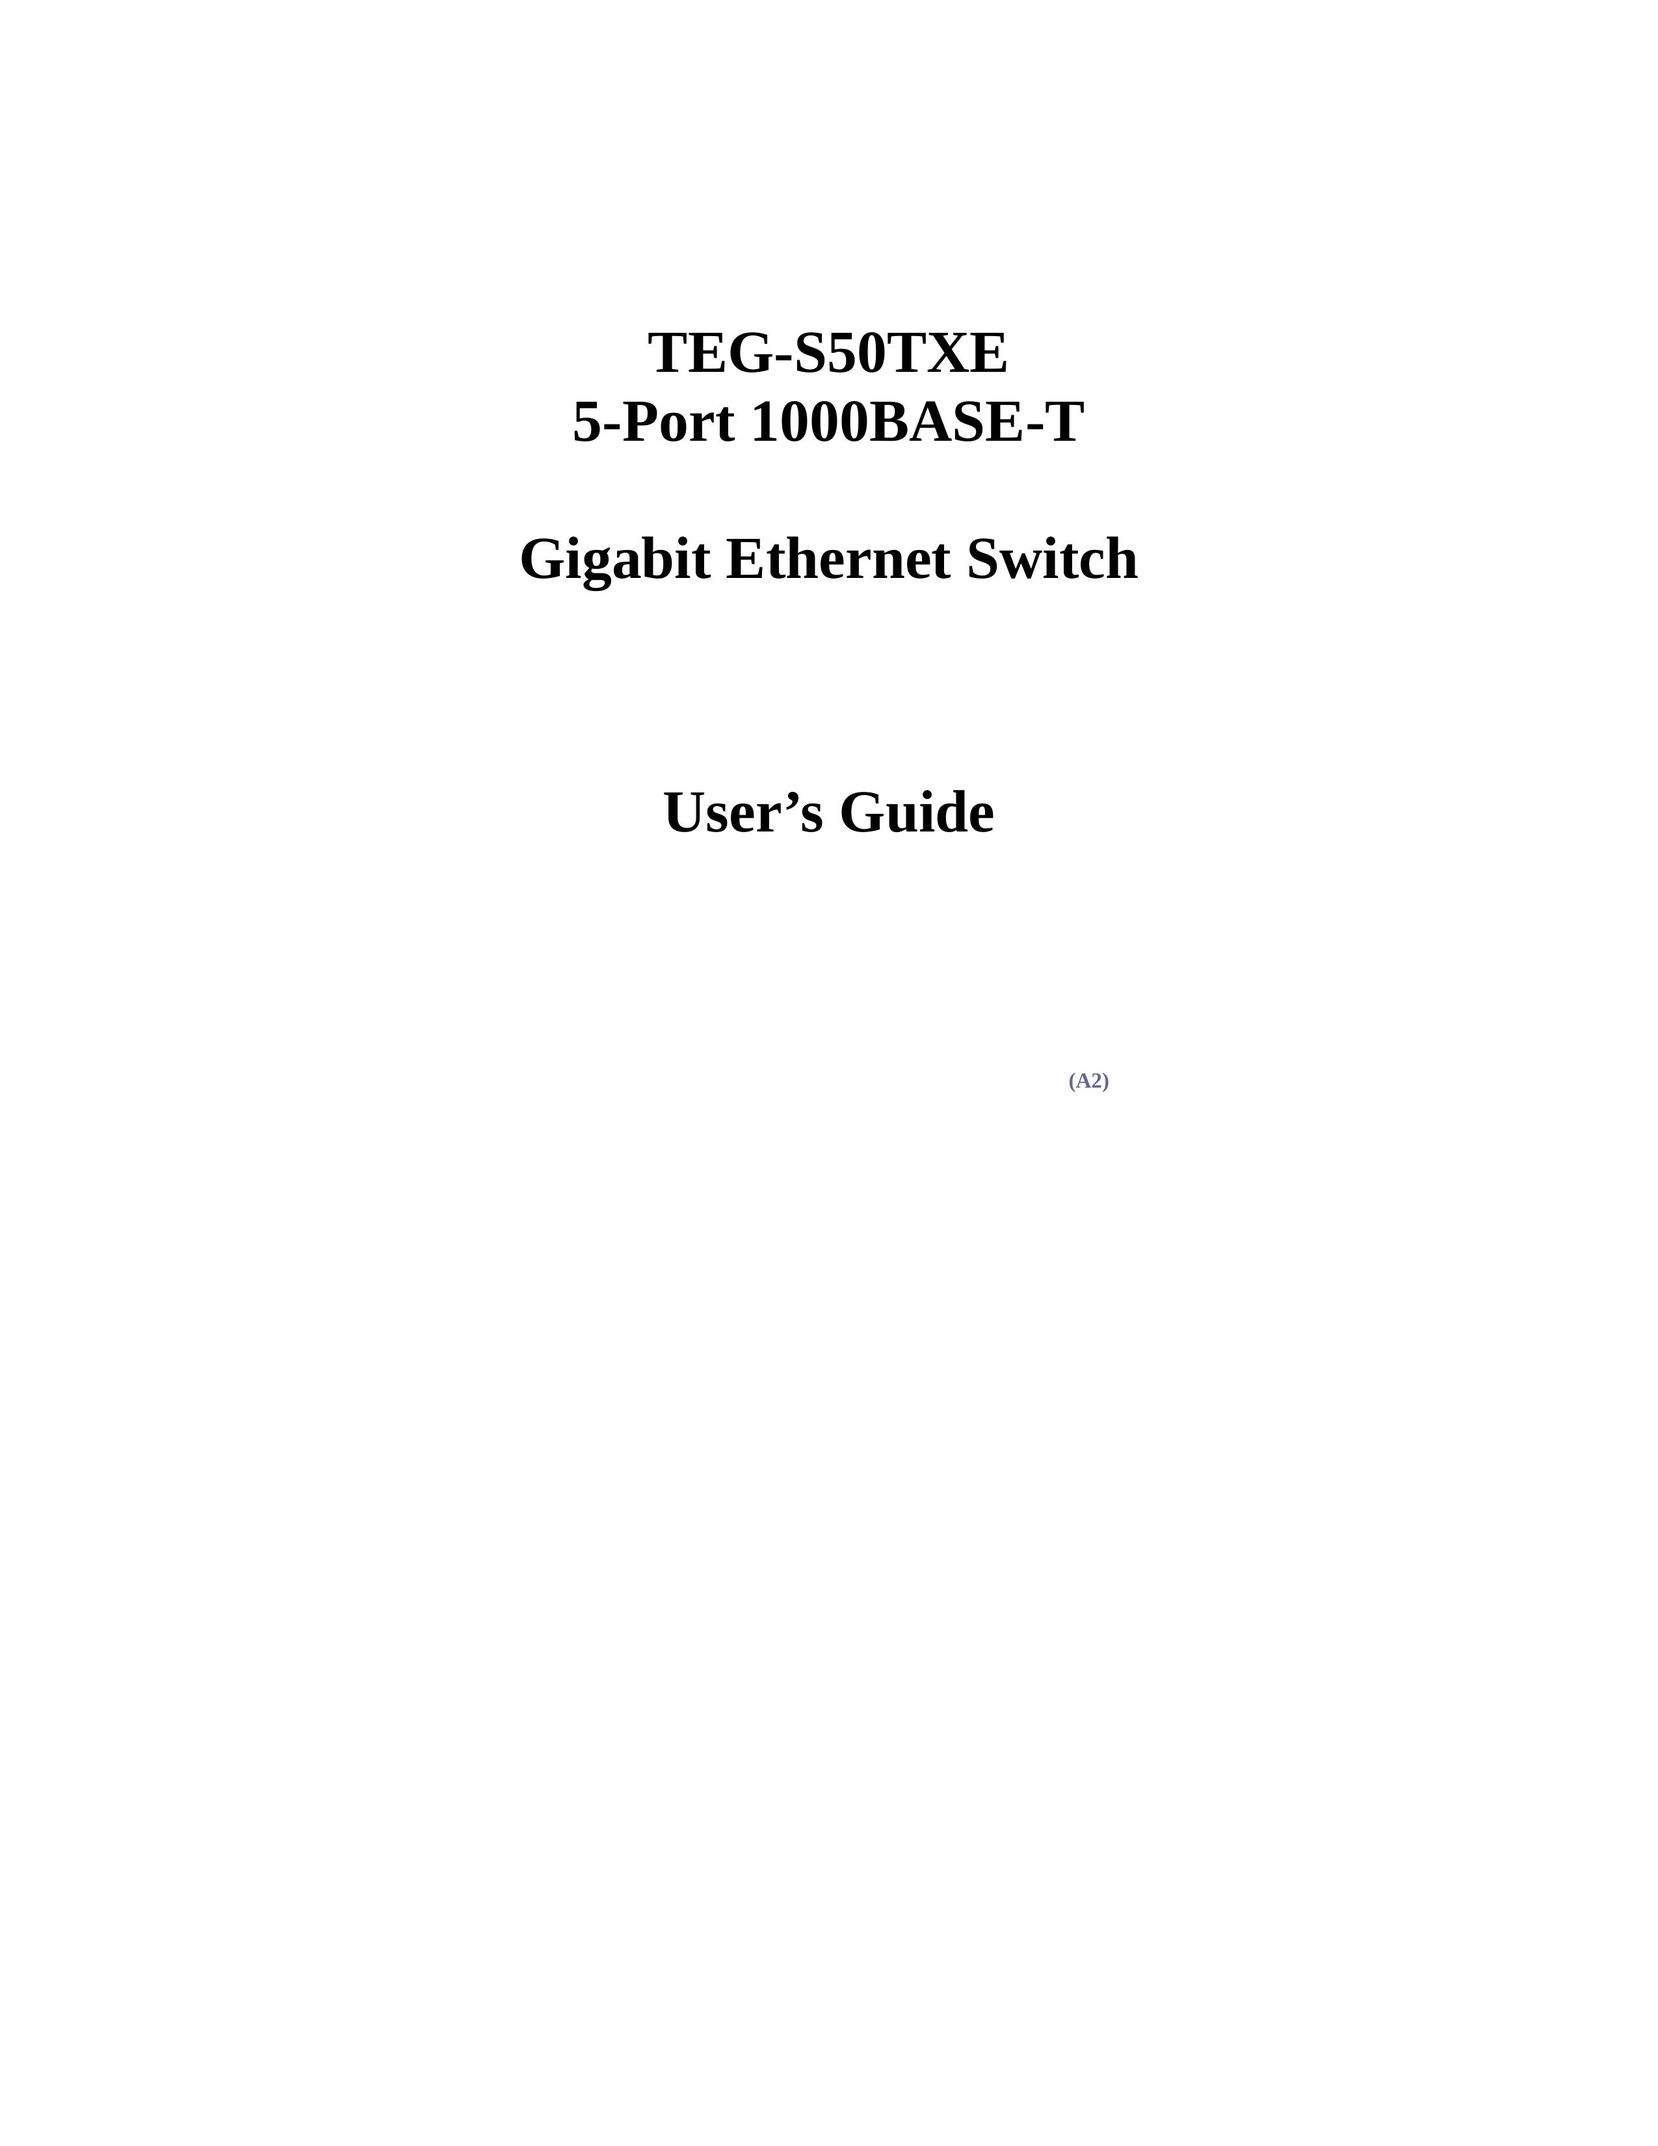 Gigabyte TEG-S50TXE Switch User Manual